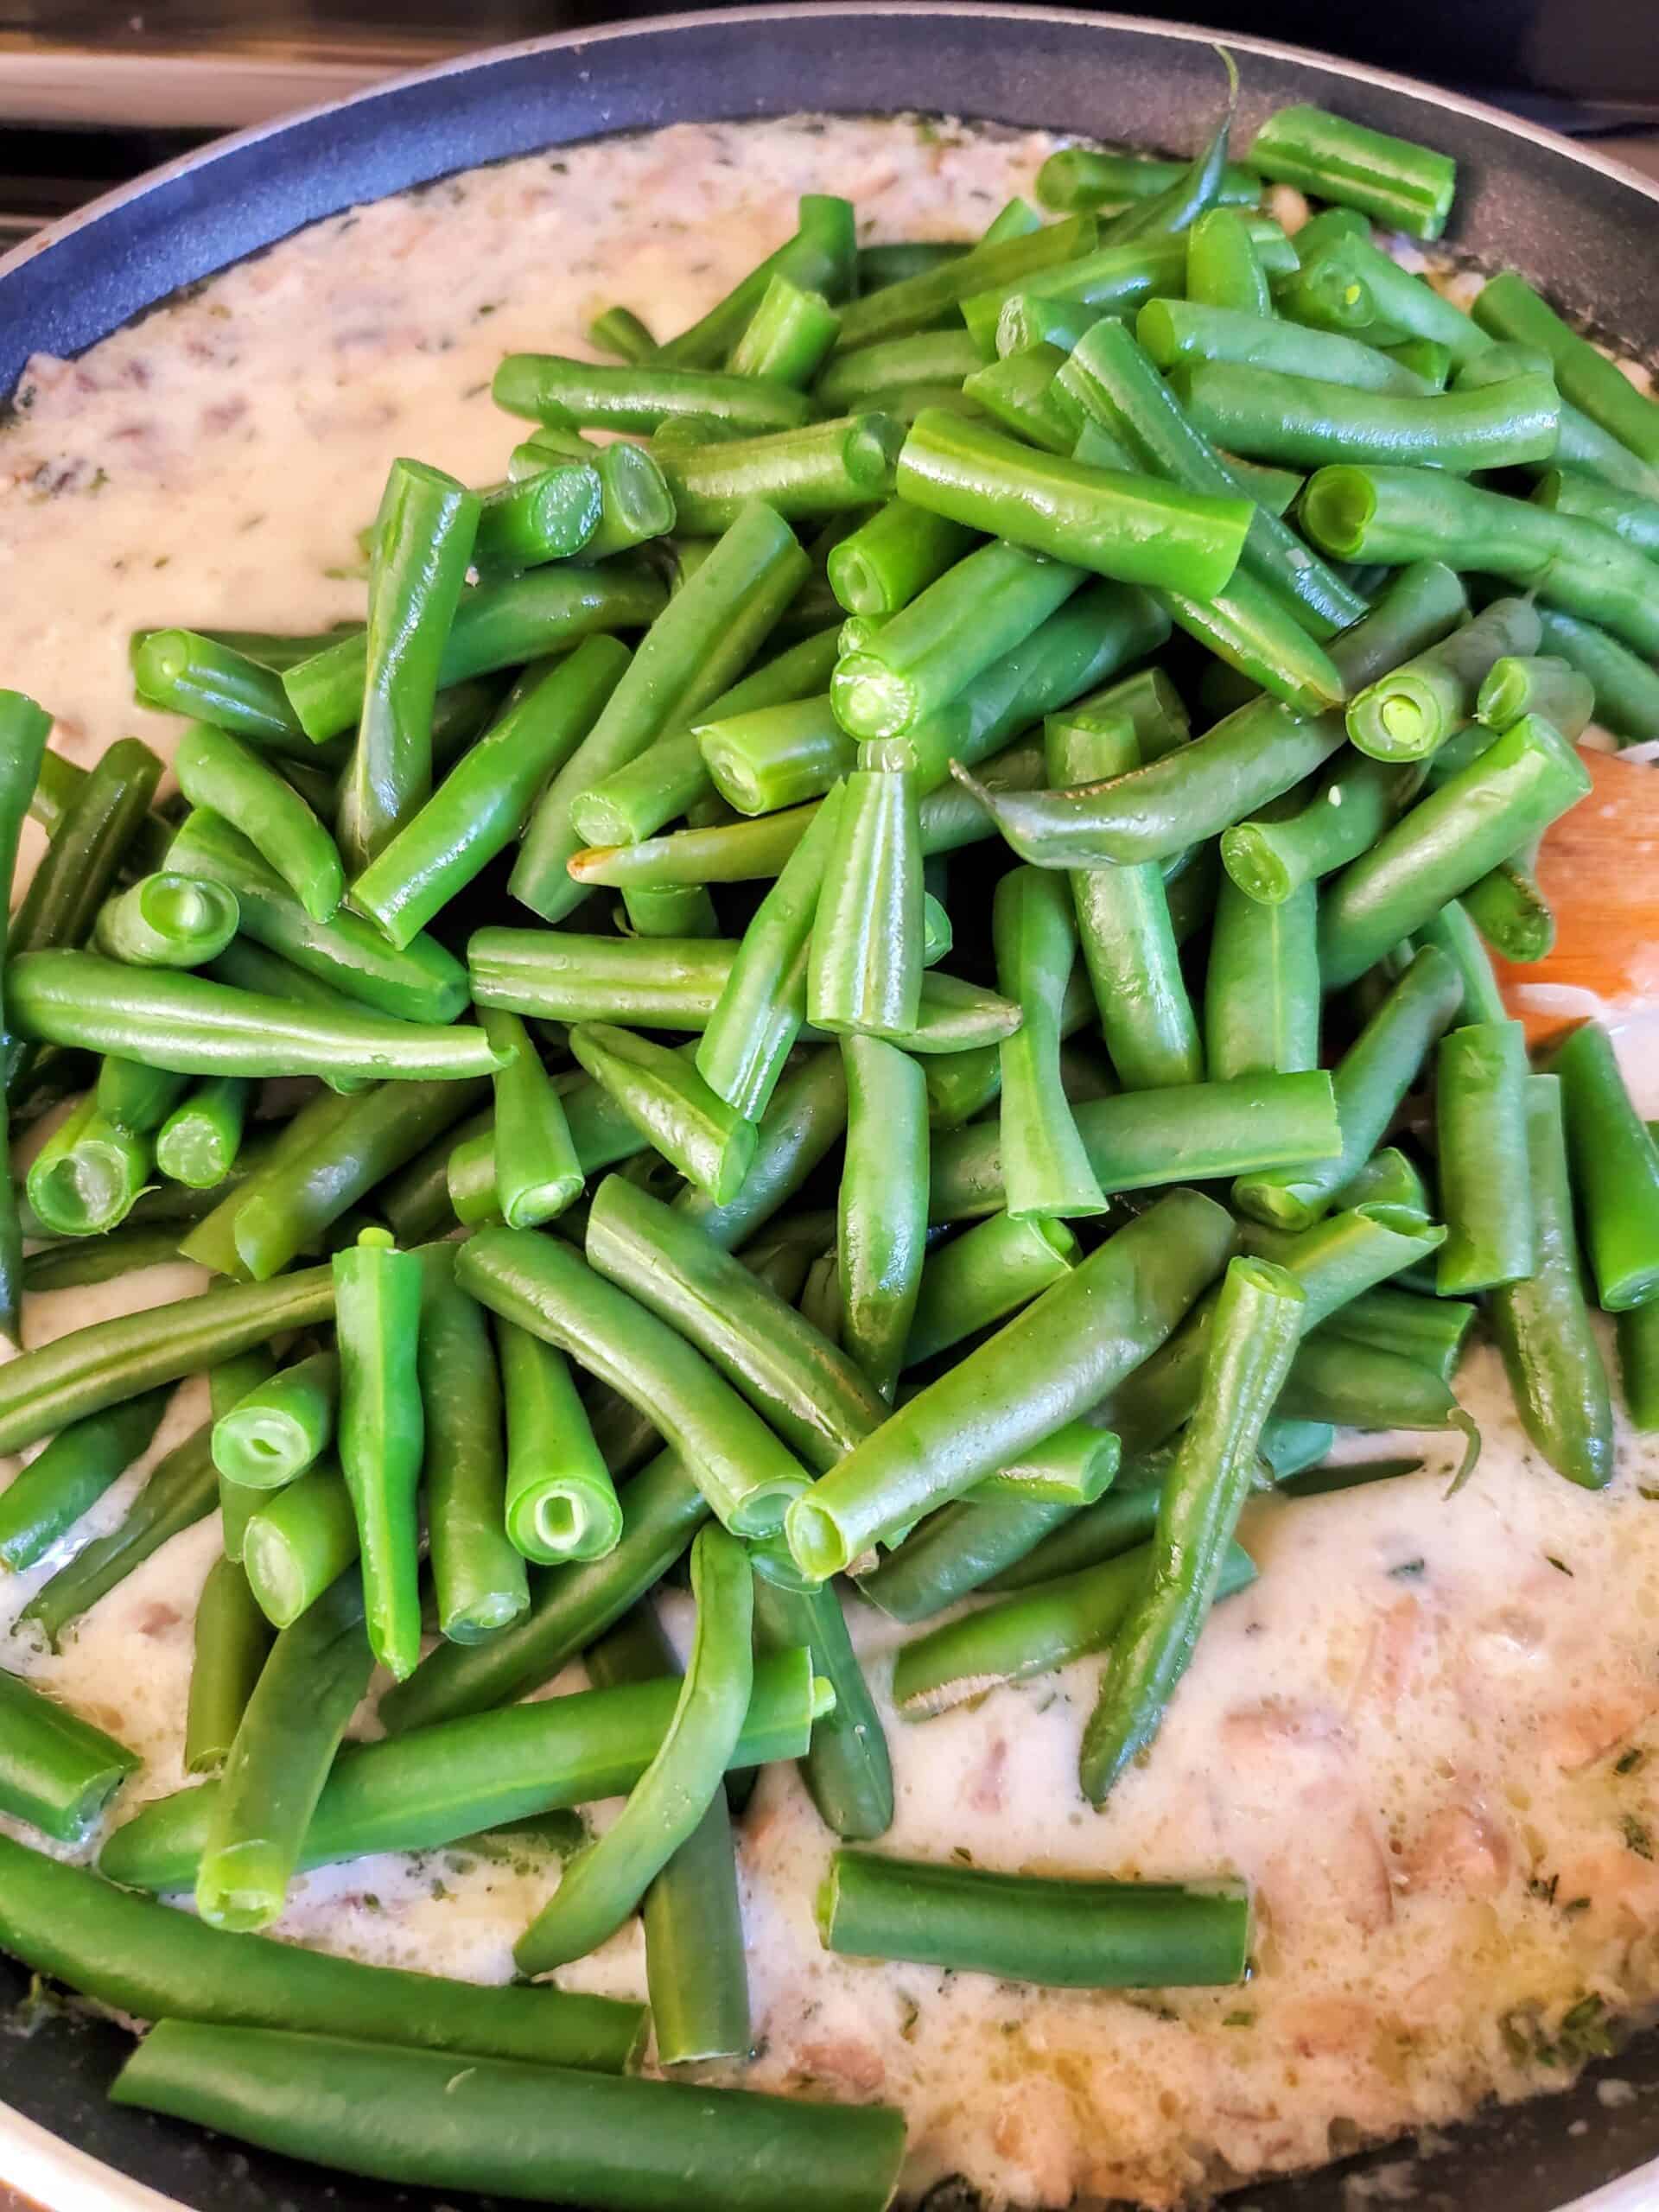 Green bean casserole